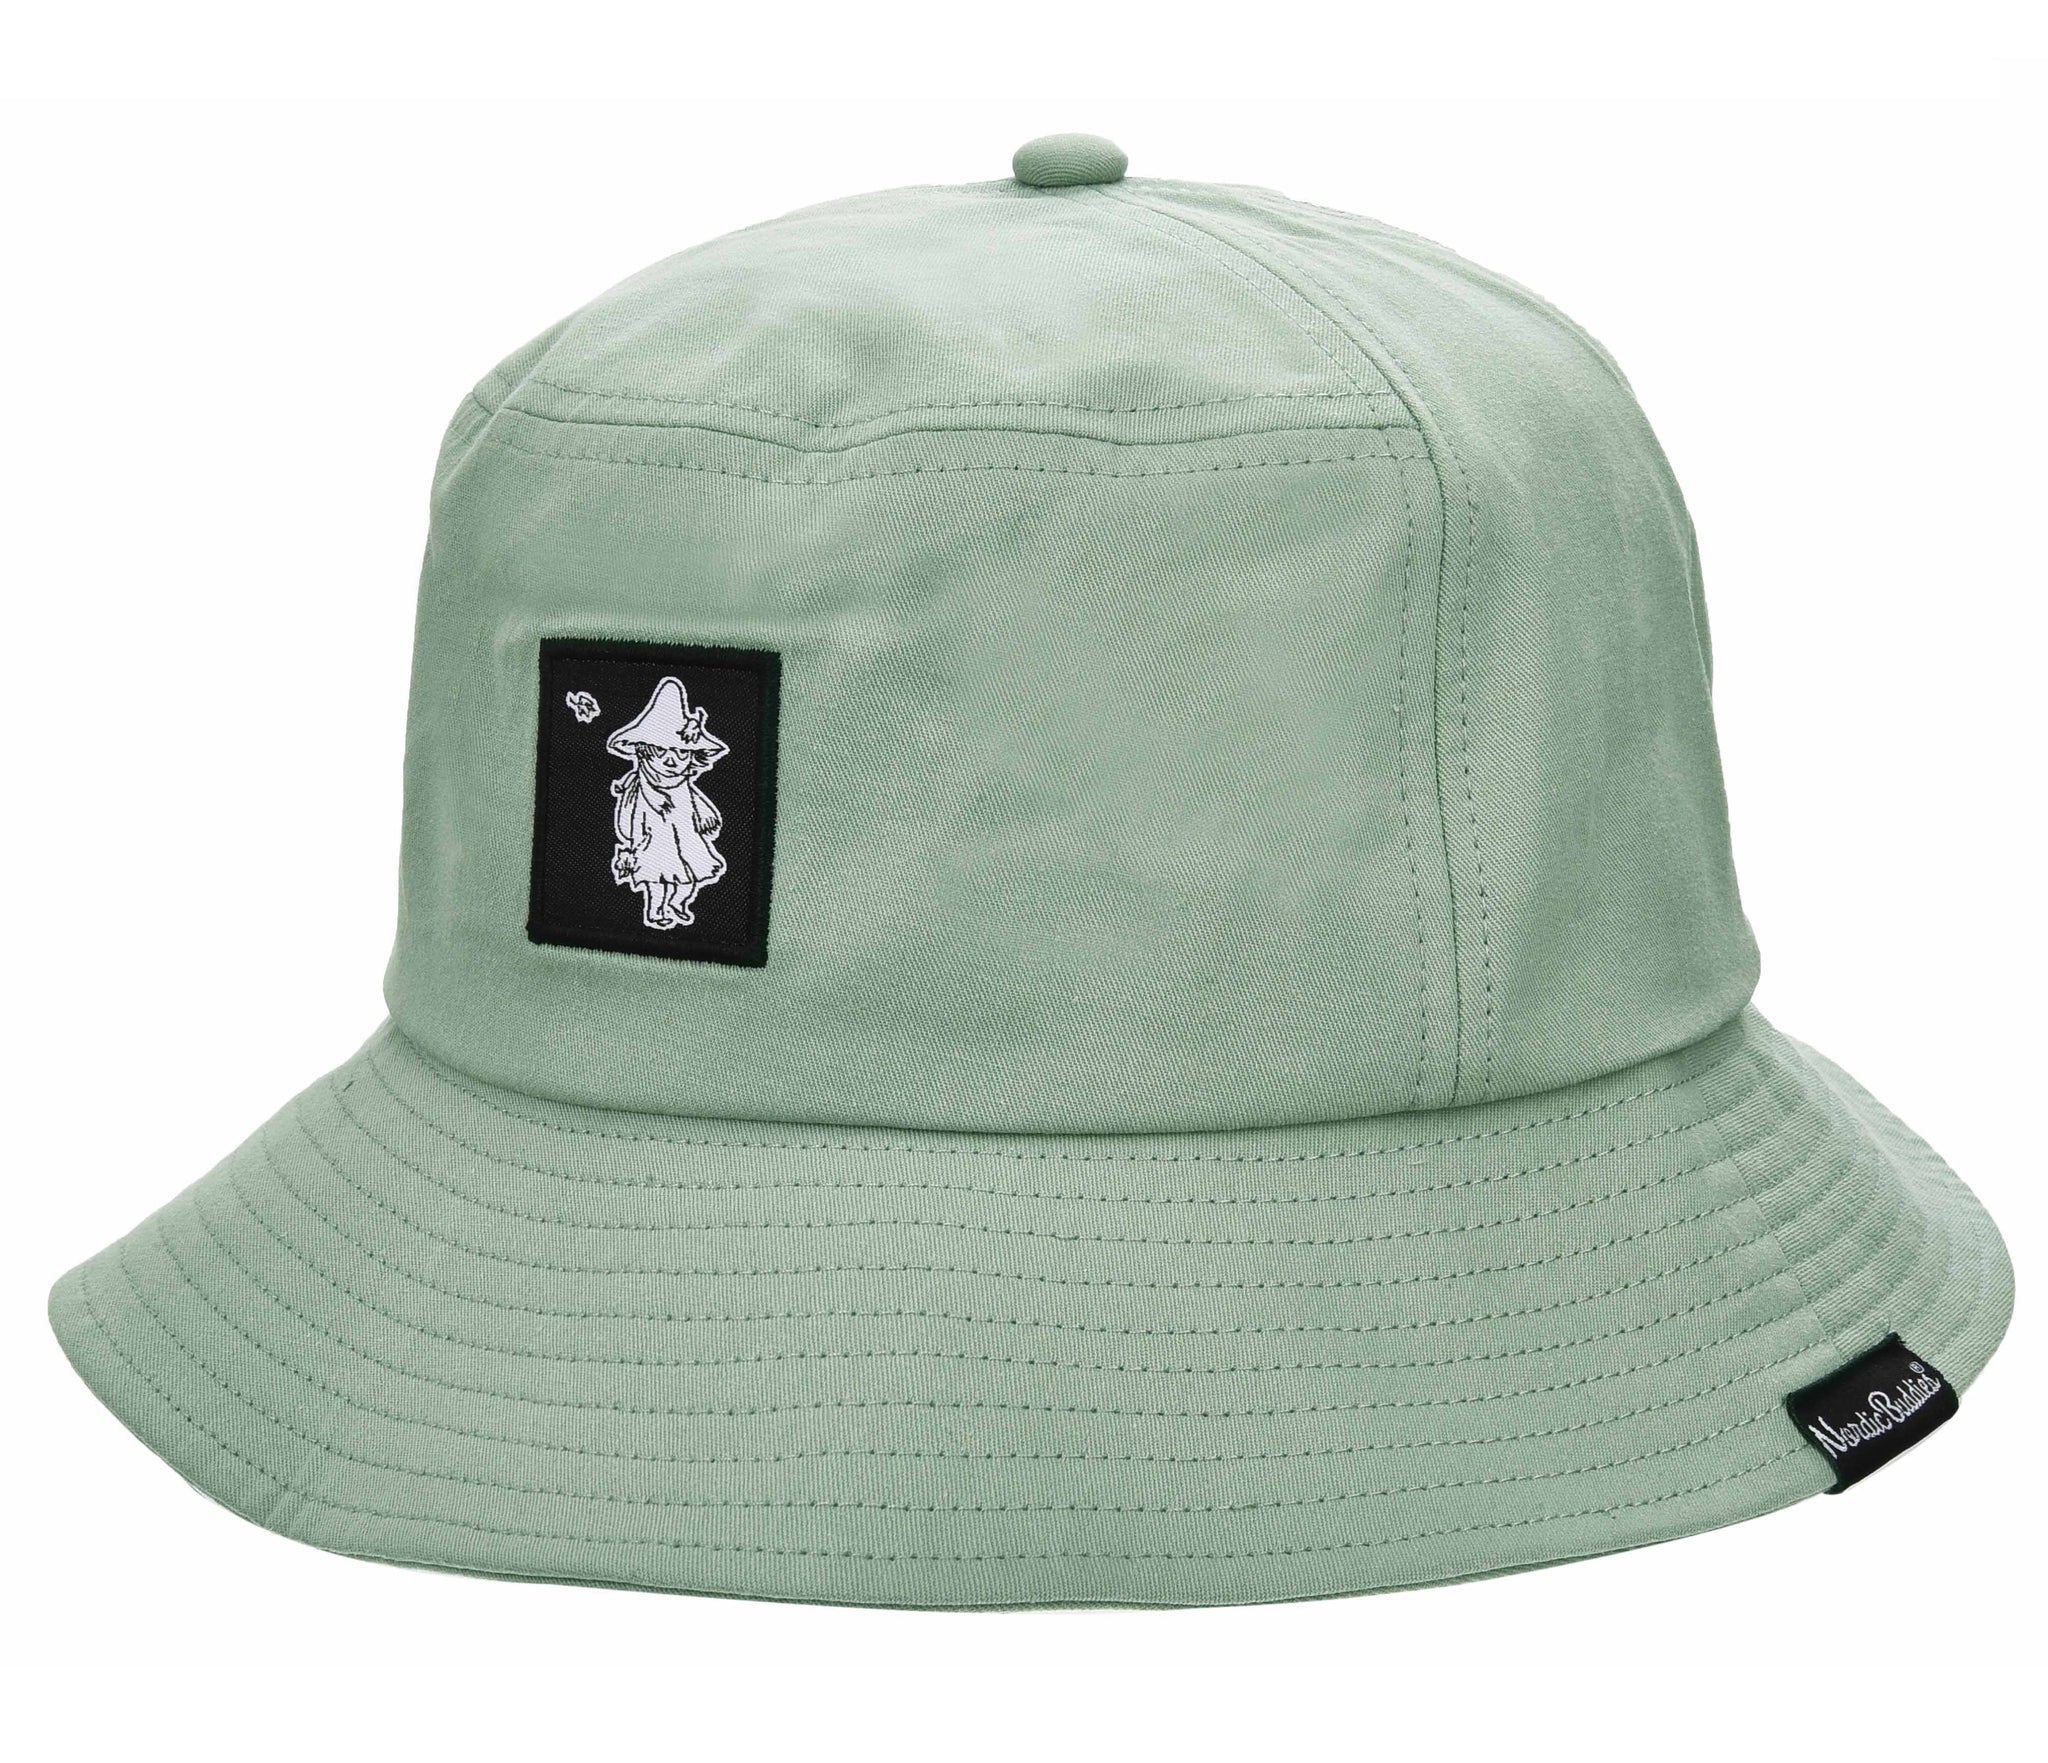 Snufkin Bucket Hat Light Green SNUFKIN88A